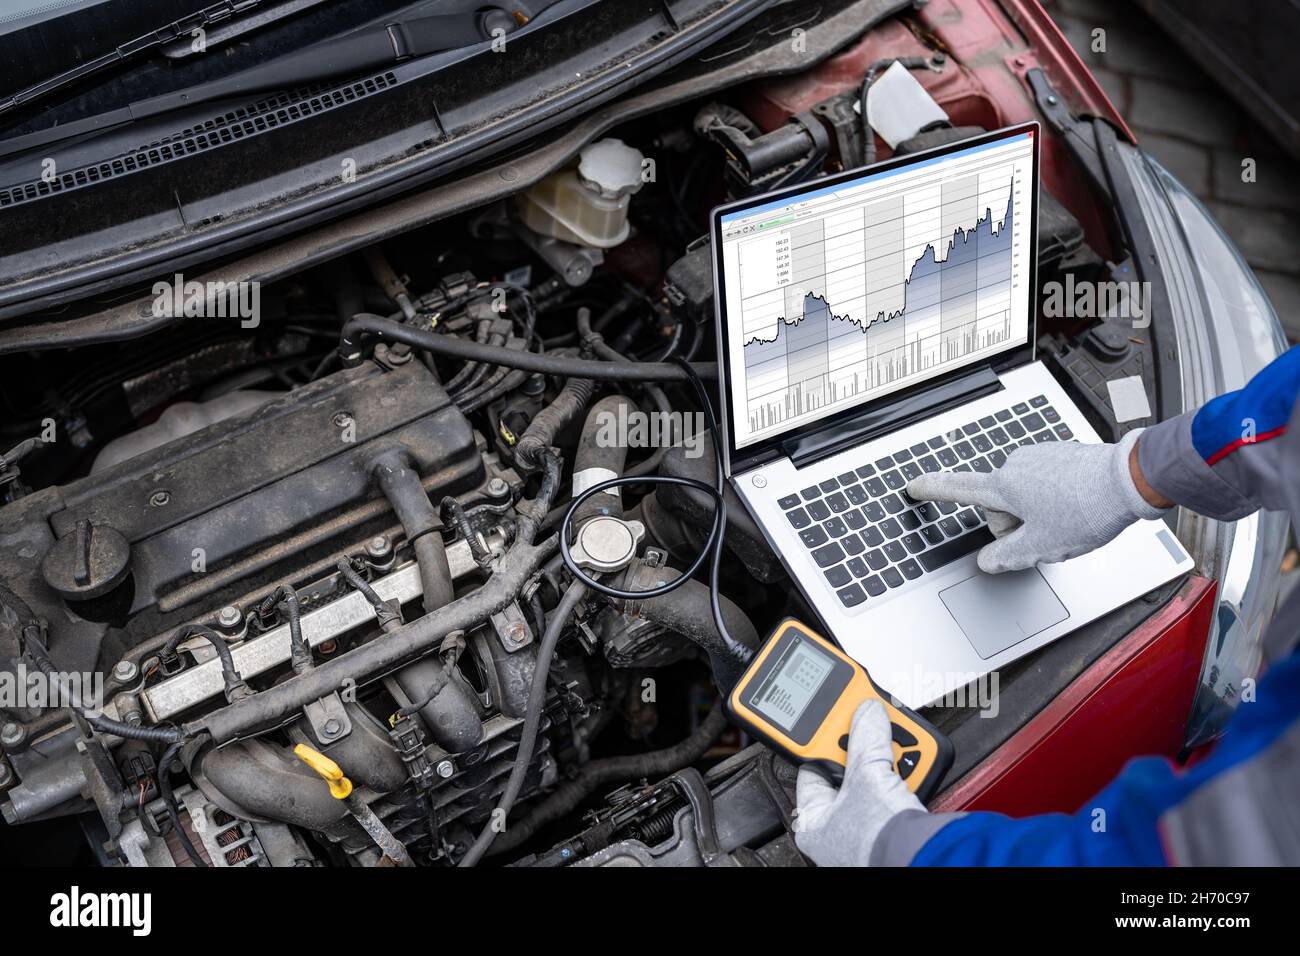 Servizio di diagnostica auto e riparazione elettronica da parte di un operatore meccanico Foto Stock